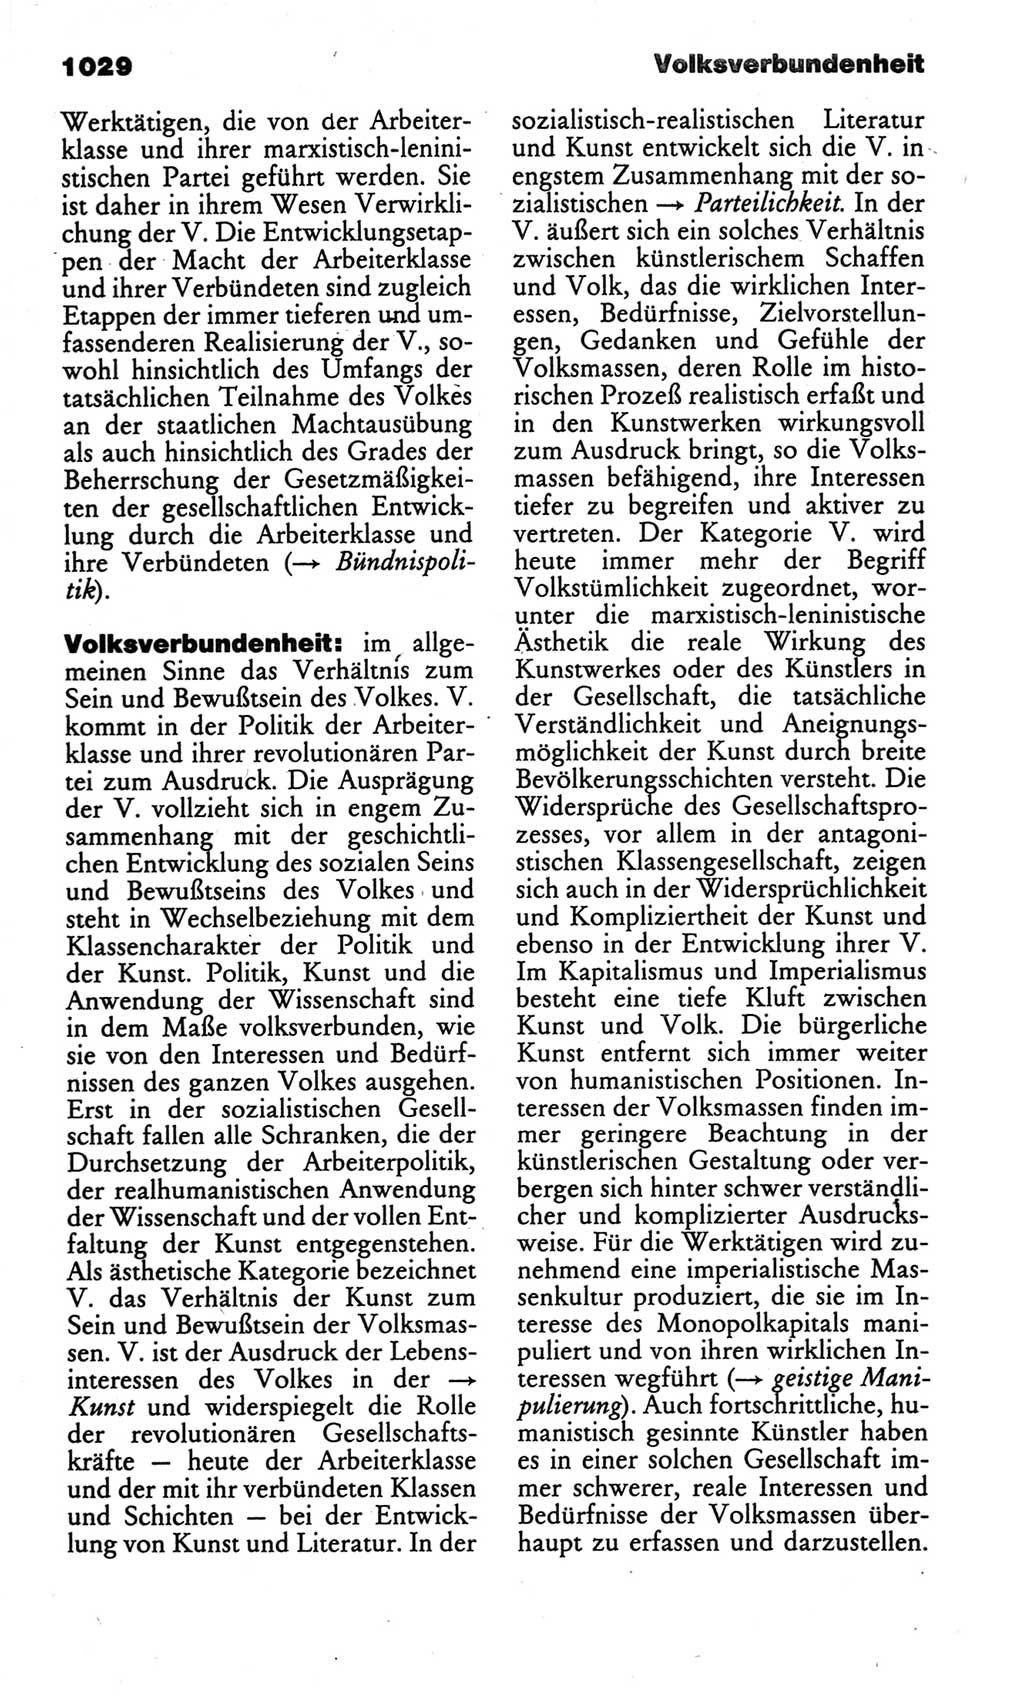 Kleines politisches Wörterbuch [Deutsche Demokratische Republik (DDR)] 1986, Seite 1029 (Kl. pol. Wb. DDR 1986, S. 1029)